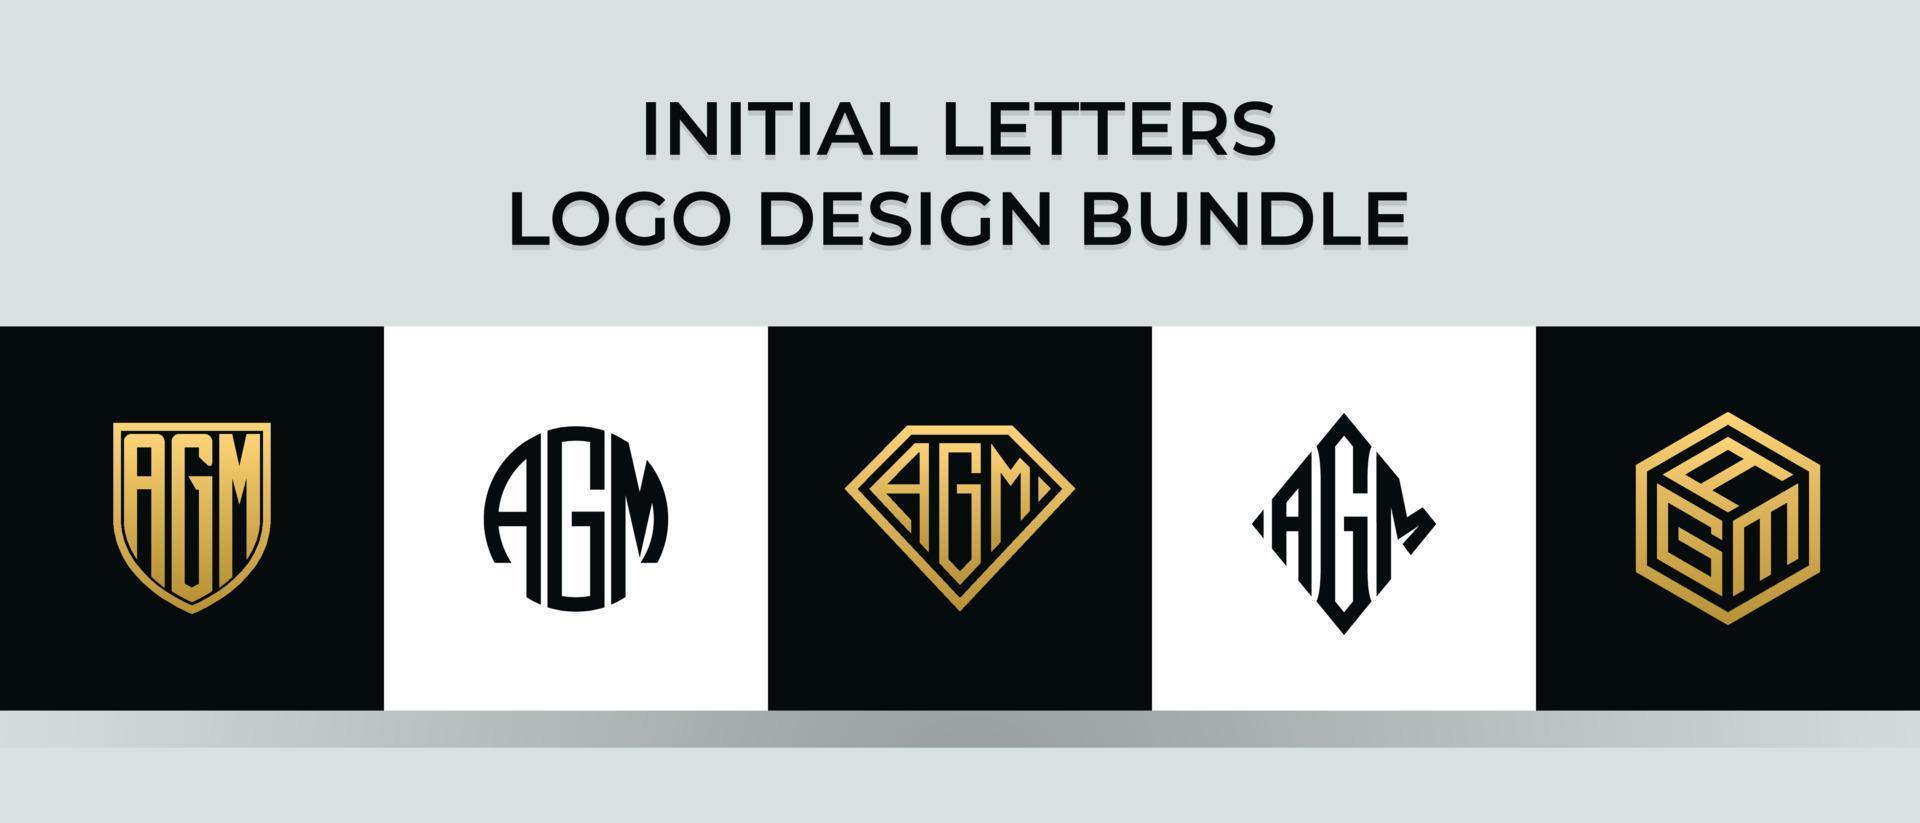 lettere iniziali agm logo design bundle vettore